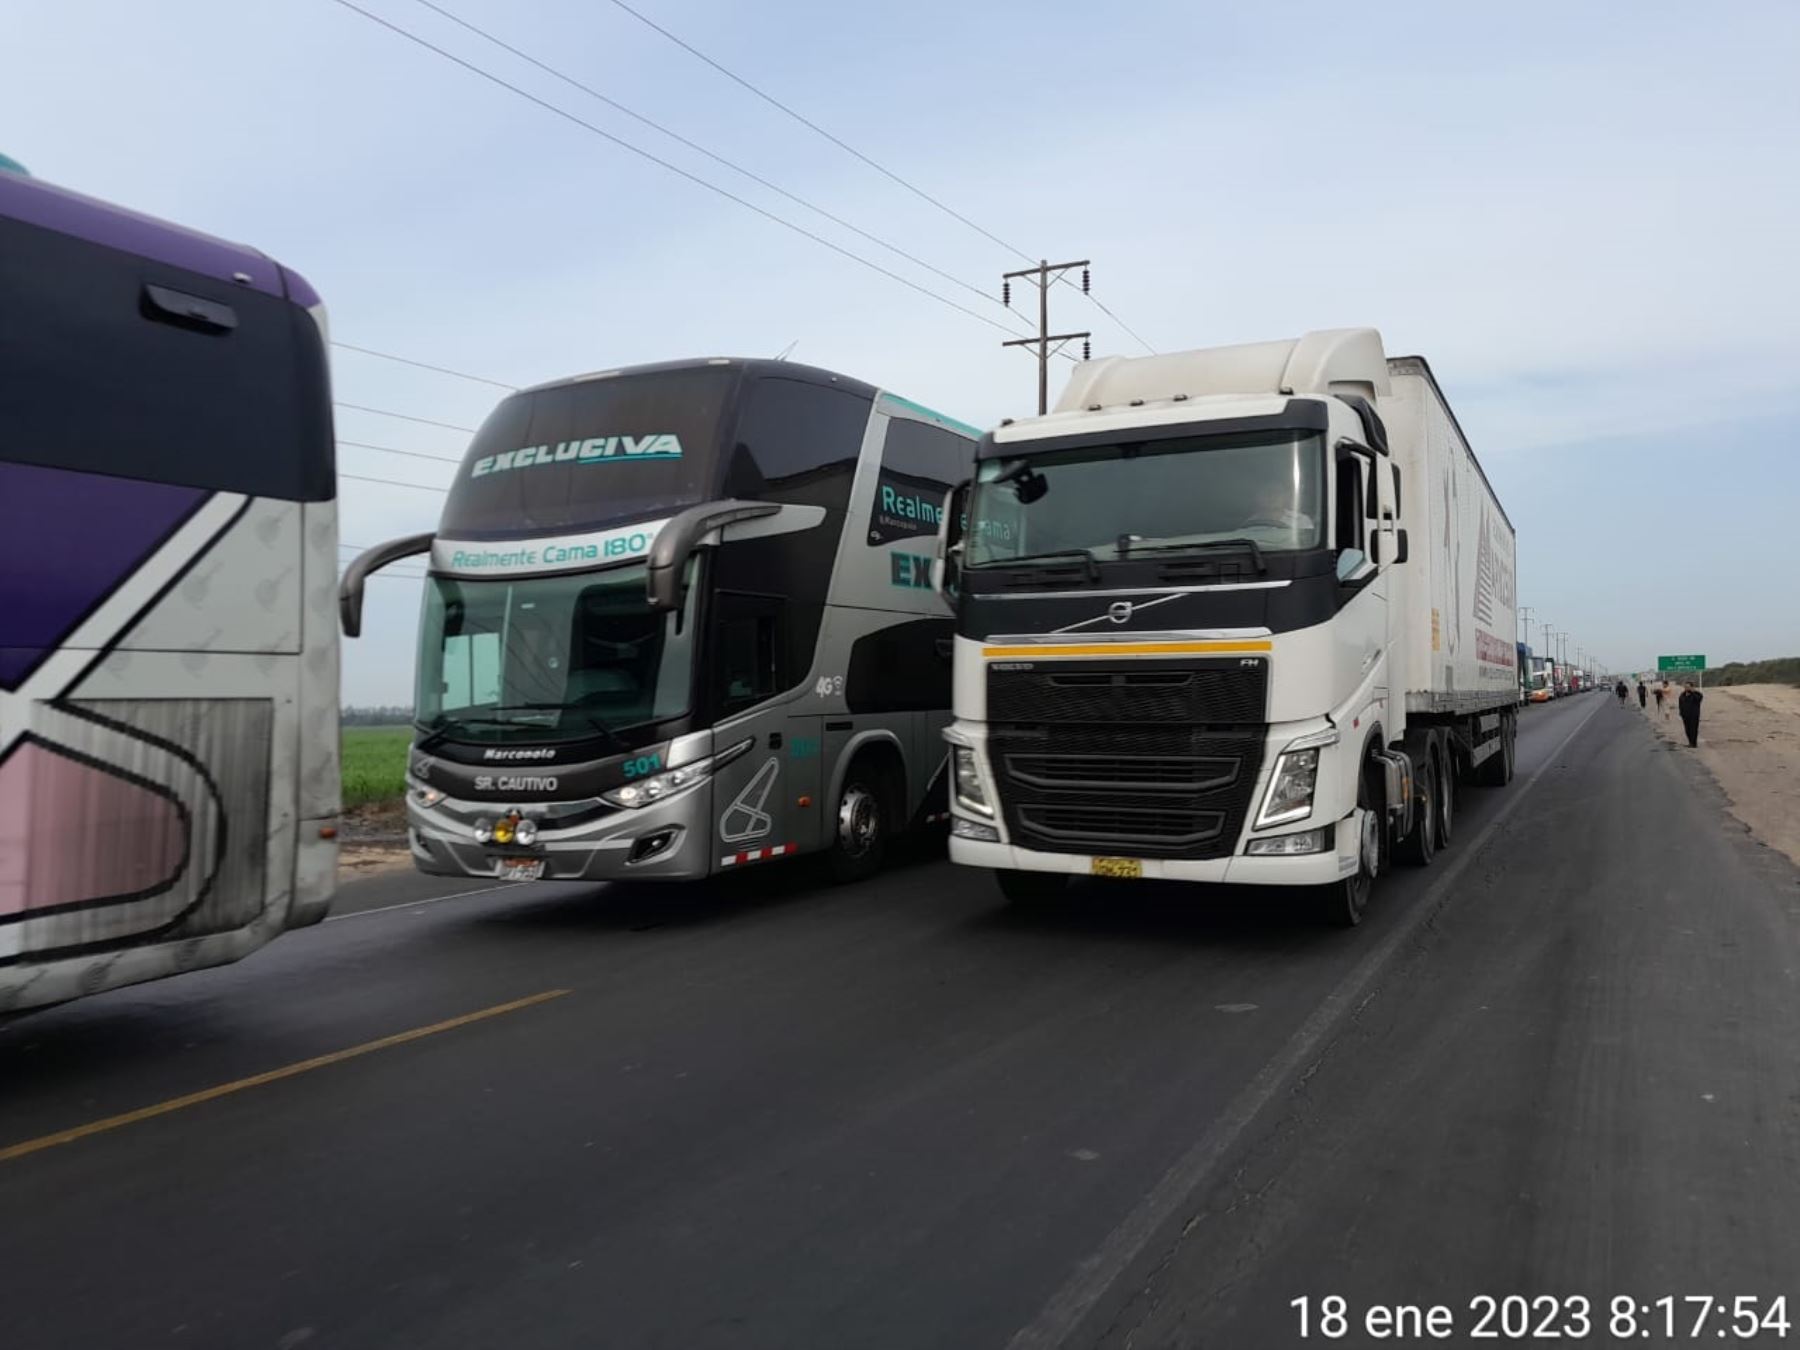 La carretera Panamericana Norte fue nuevamente bloqueada por manifestantes a la altura del distrito de Chao, región La Libertad.